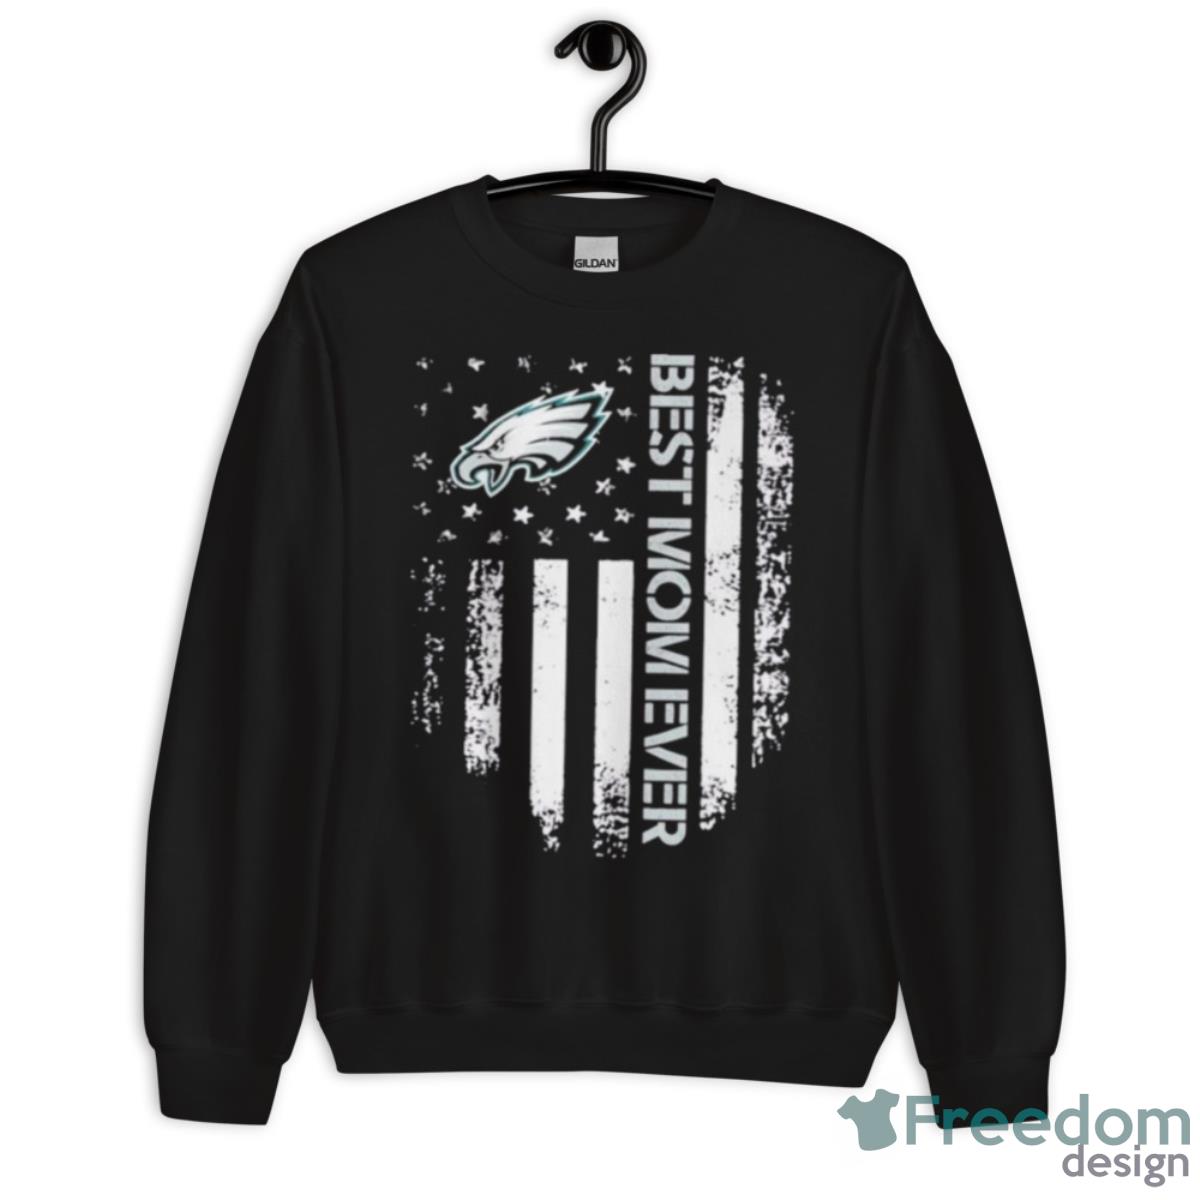 Best Mom Ever Philadelphia Eagles Shirt - Freedomdesign